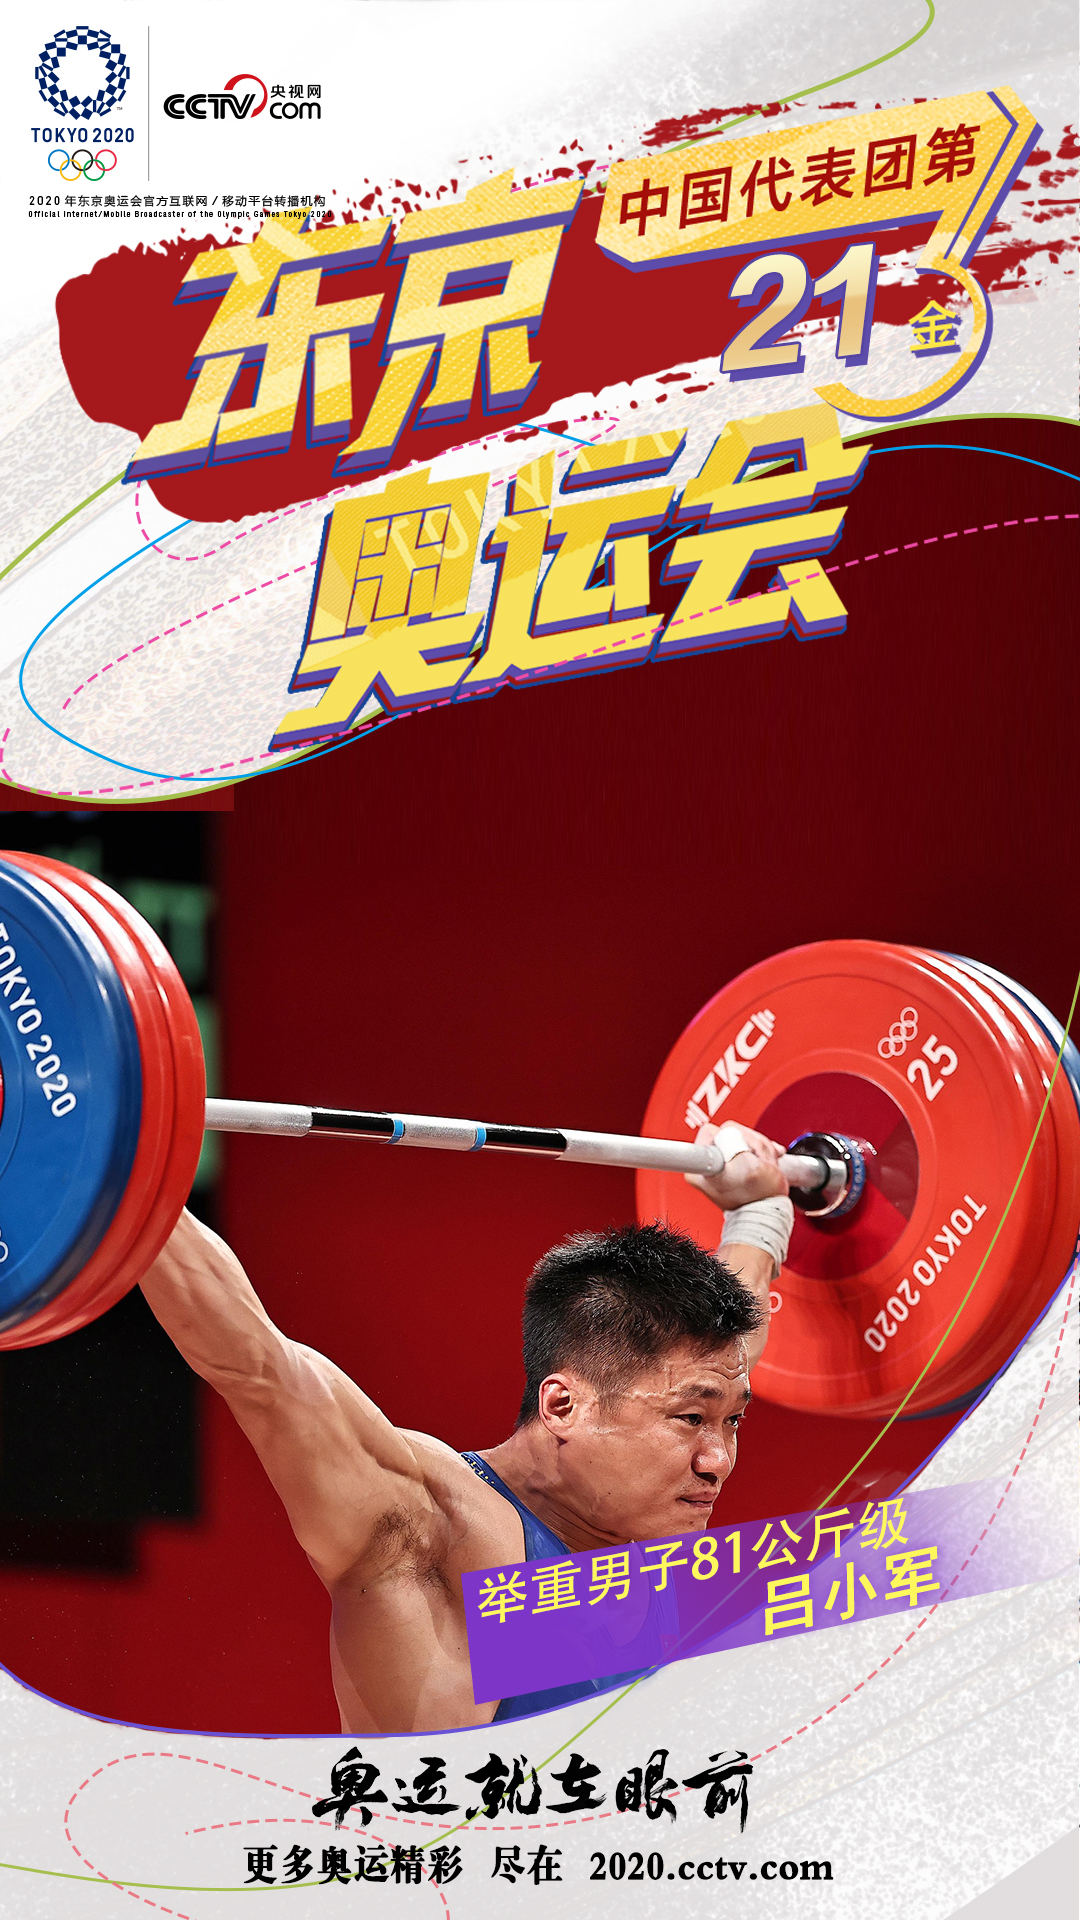 第21金！吕小军夺得举重男子81公斤级金牌